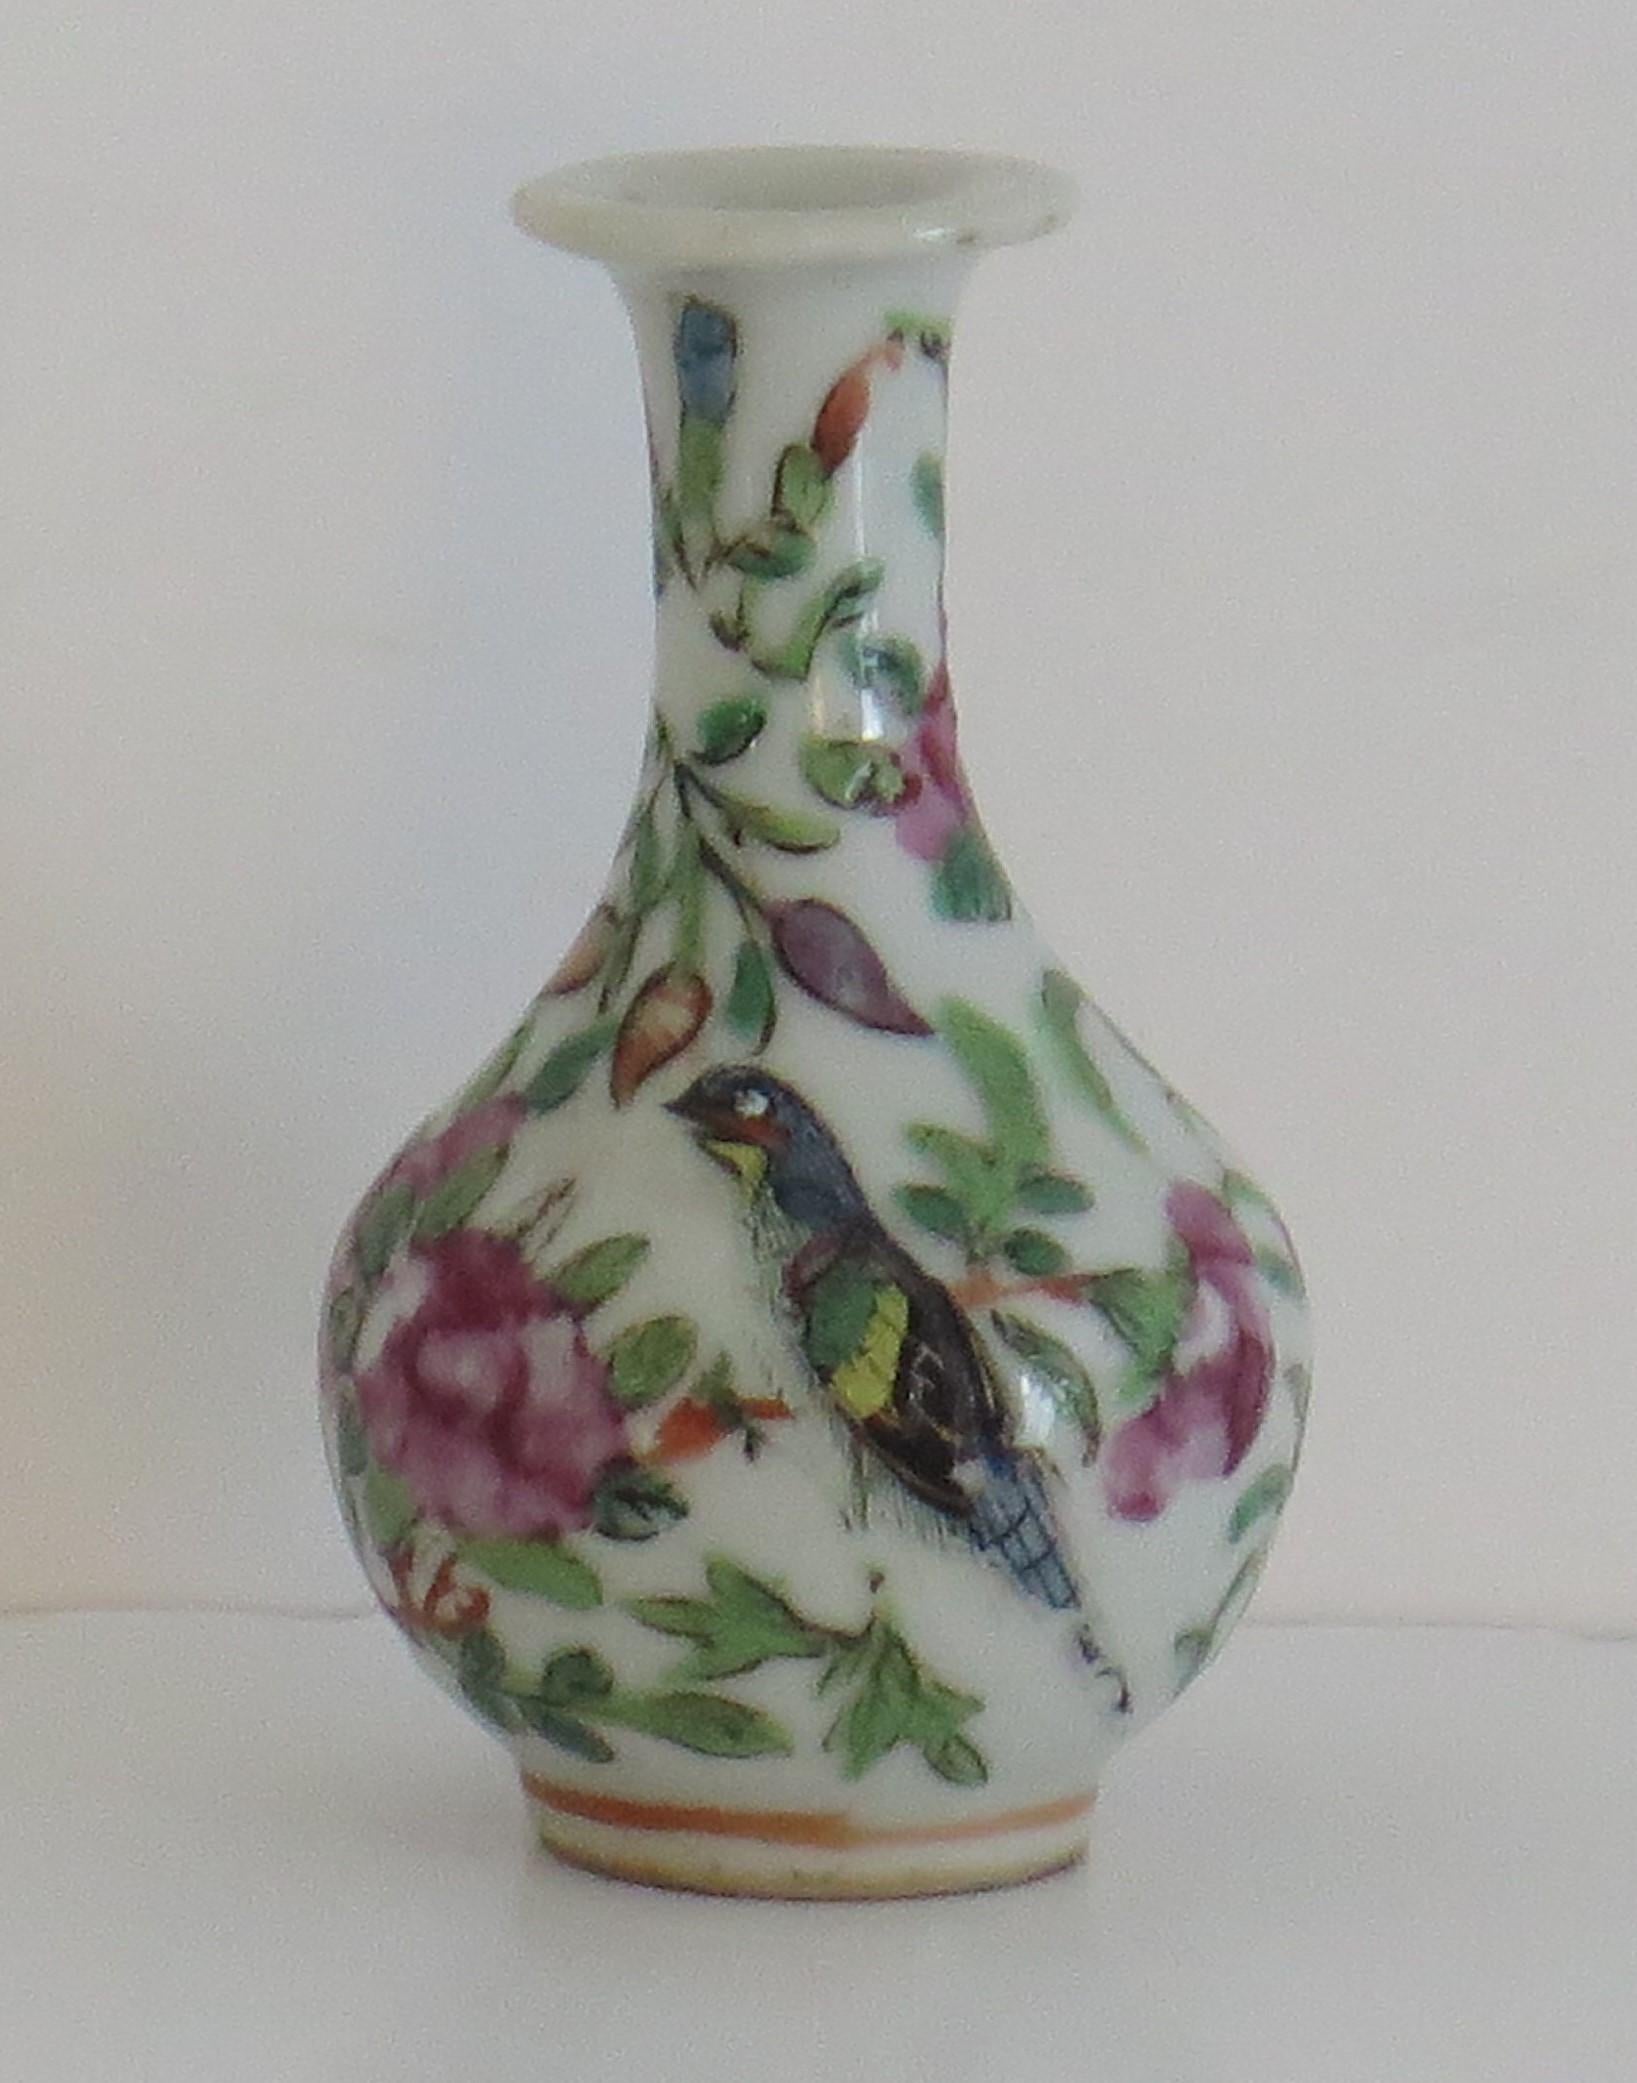 Dies ist eine gute, dekorative chinesische Export, kaiserlichen Kanton, Porzellan, Famille Rose, kleine oder Knospe Vase, die wir auf die Mitte des 19. Jahrhunderts, Qing-Dynastie, ca. 1850 zu datieren.

Die Vase hat eine gute Balusterform mit